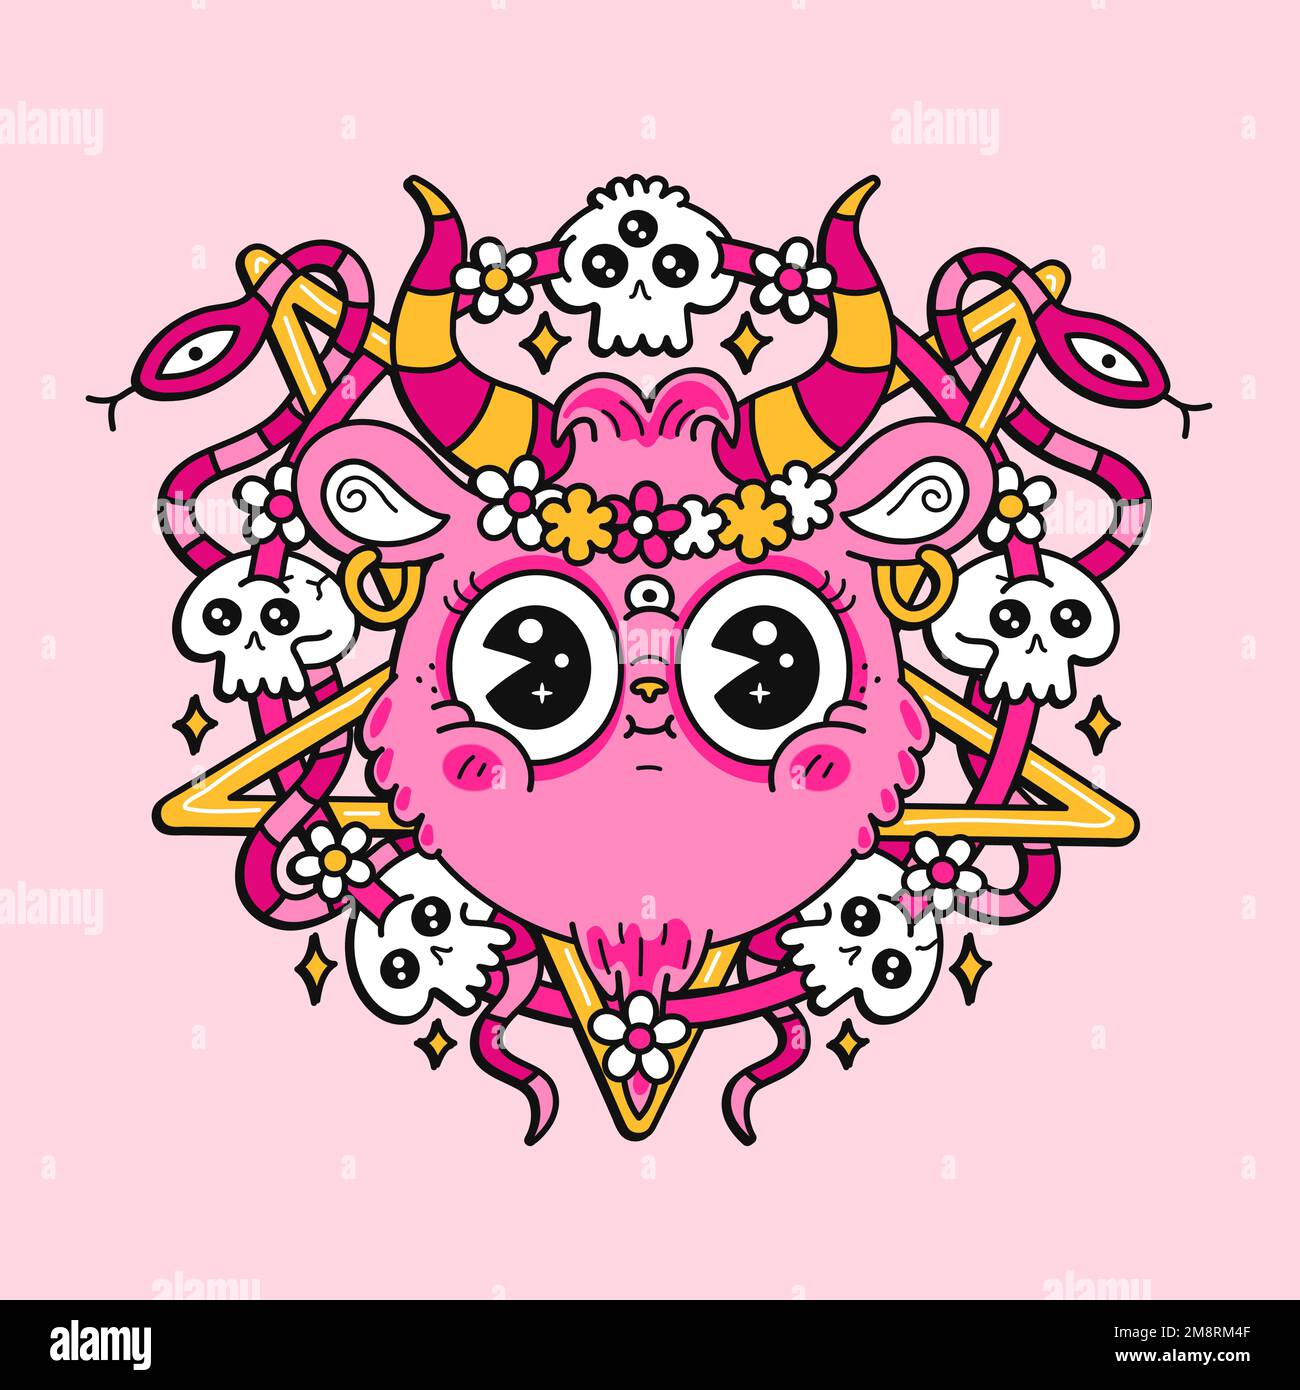 Komischer Ziegensatankopf und Pentagramm. Logo mit Vektor-Cartoon-Figur. Süßes Lächeln, Ziegengesicht, Dämon, Satanmuster für T-Shirt, Poster Art Konzept Stock Vektor